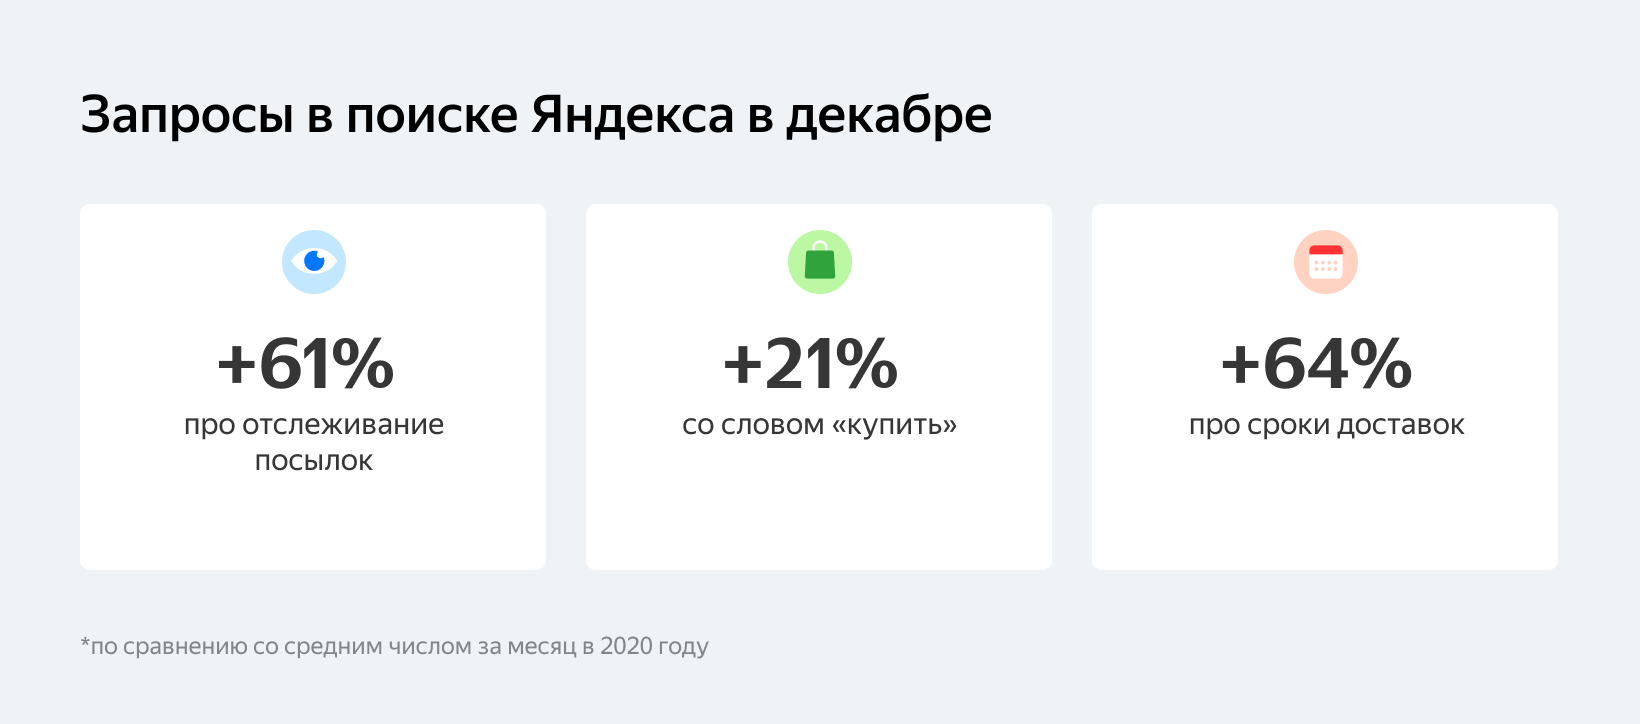 20% пользователей Яндекса готовы доплатить за экспресс-доставку подарков